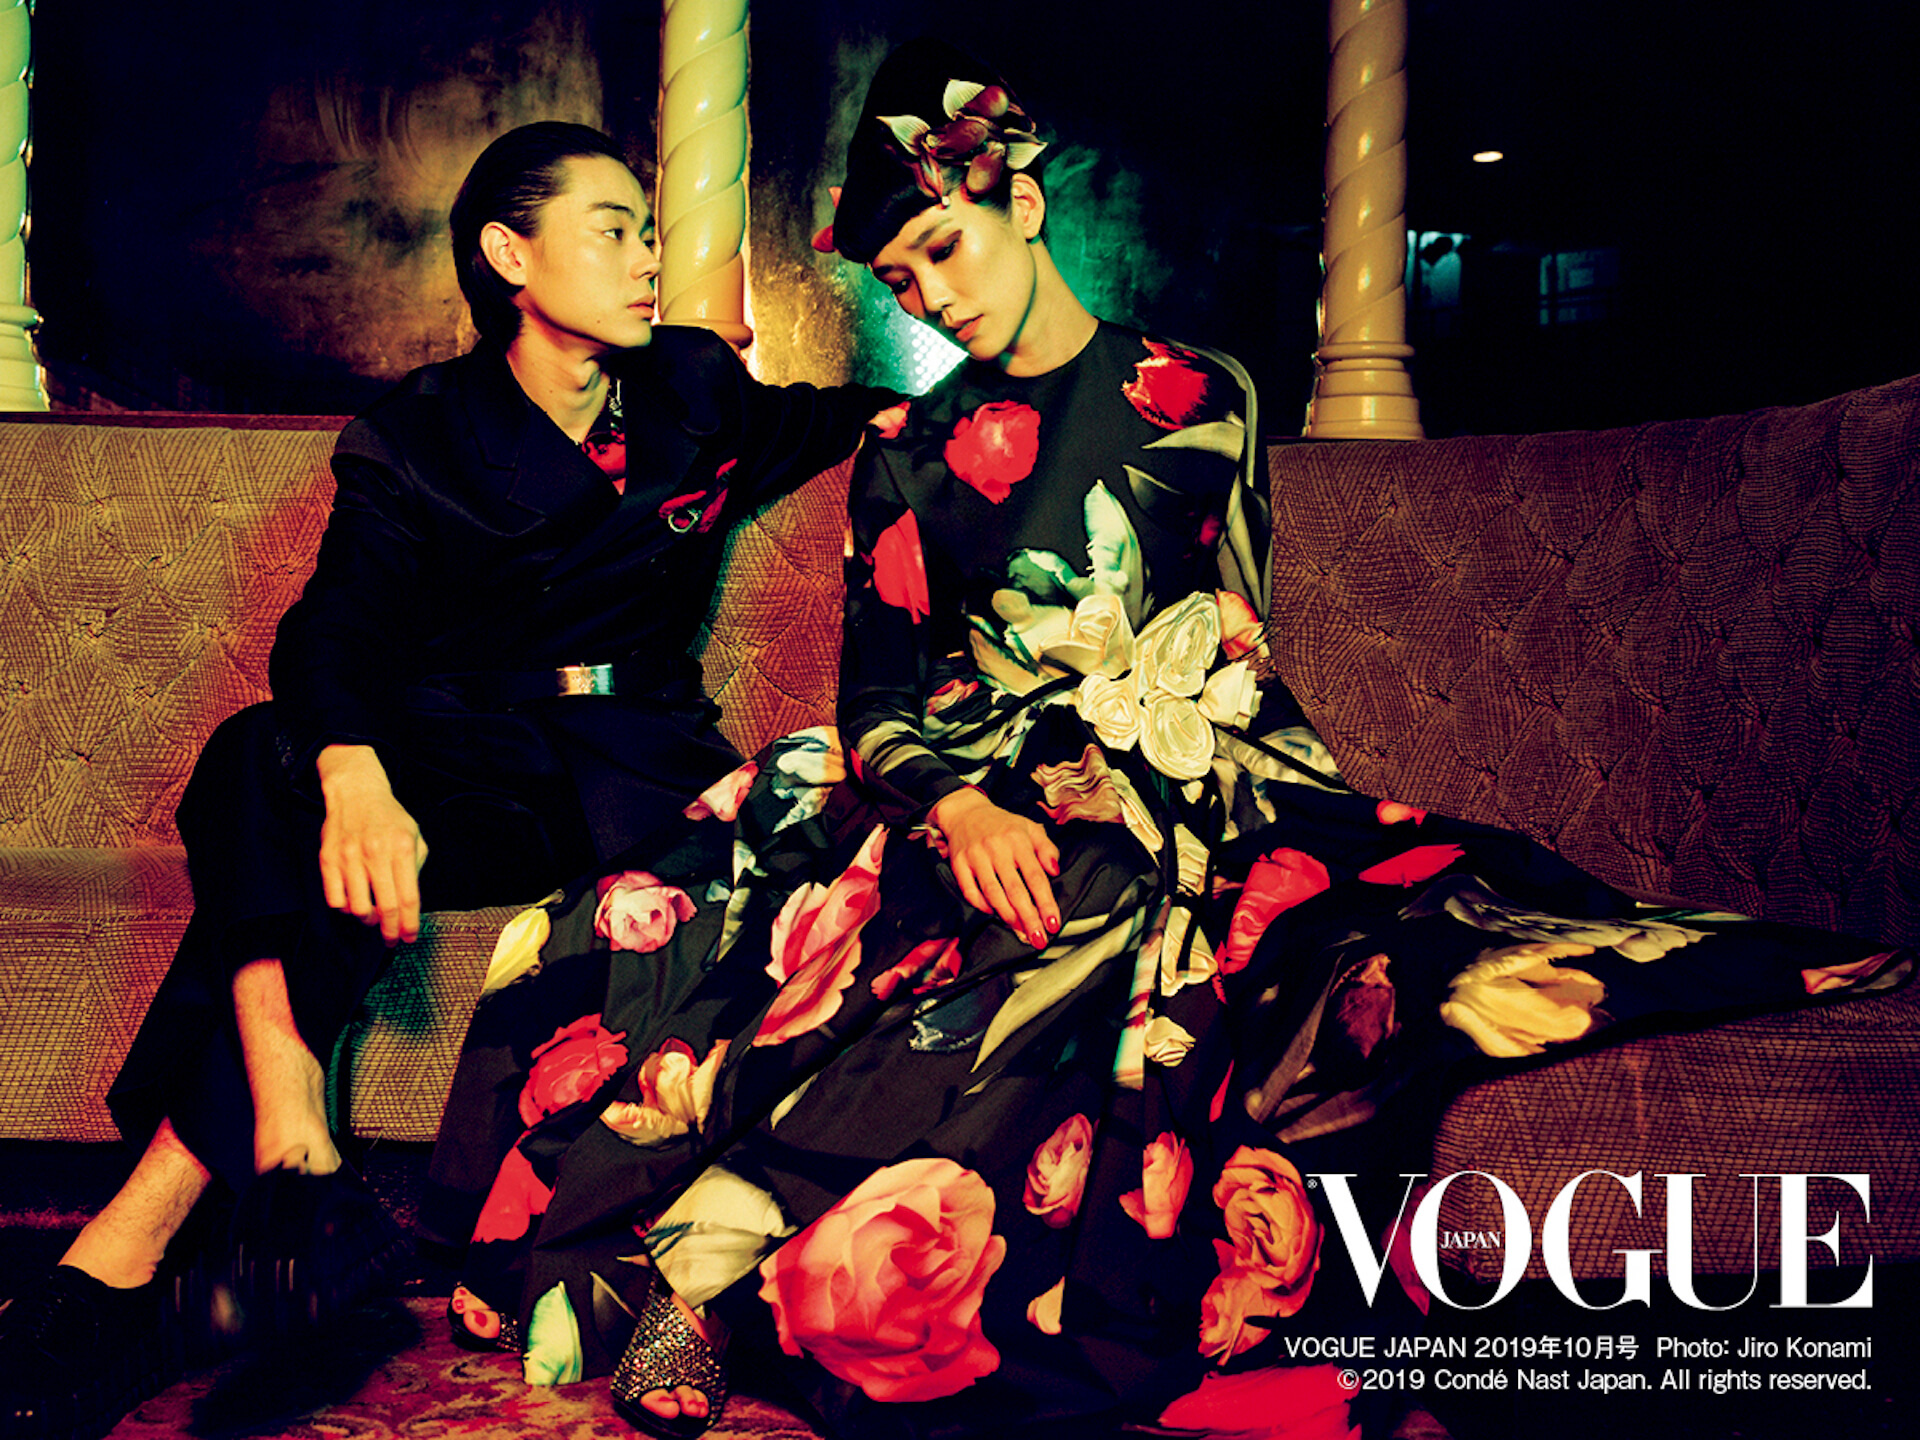 菅田将暉 Tao 19年代風ファッションに身を包み Vogue Japan に登場 Qetic